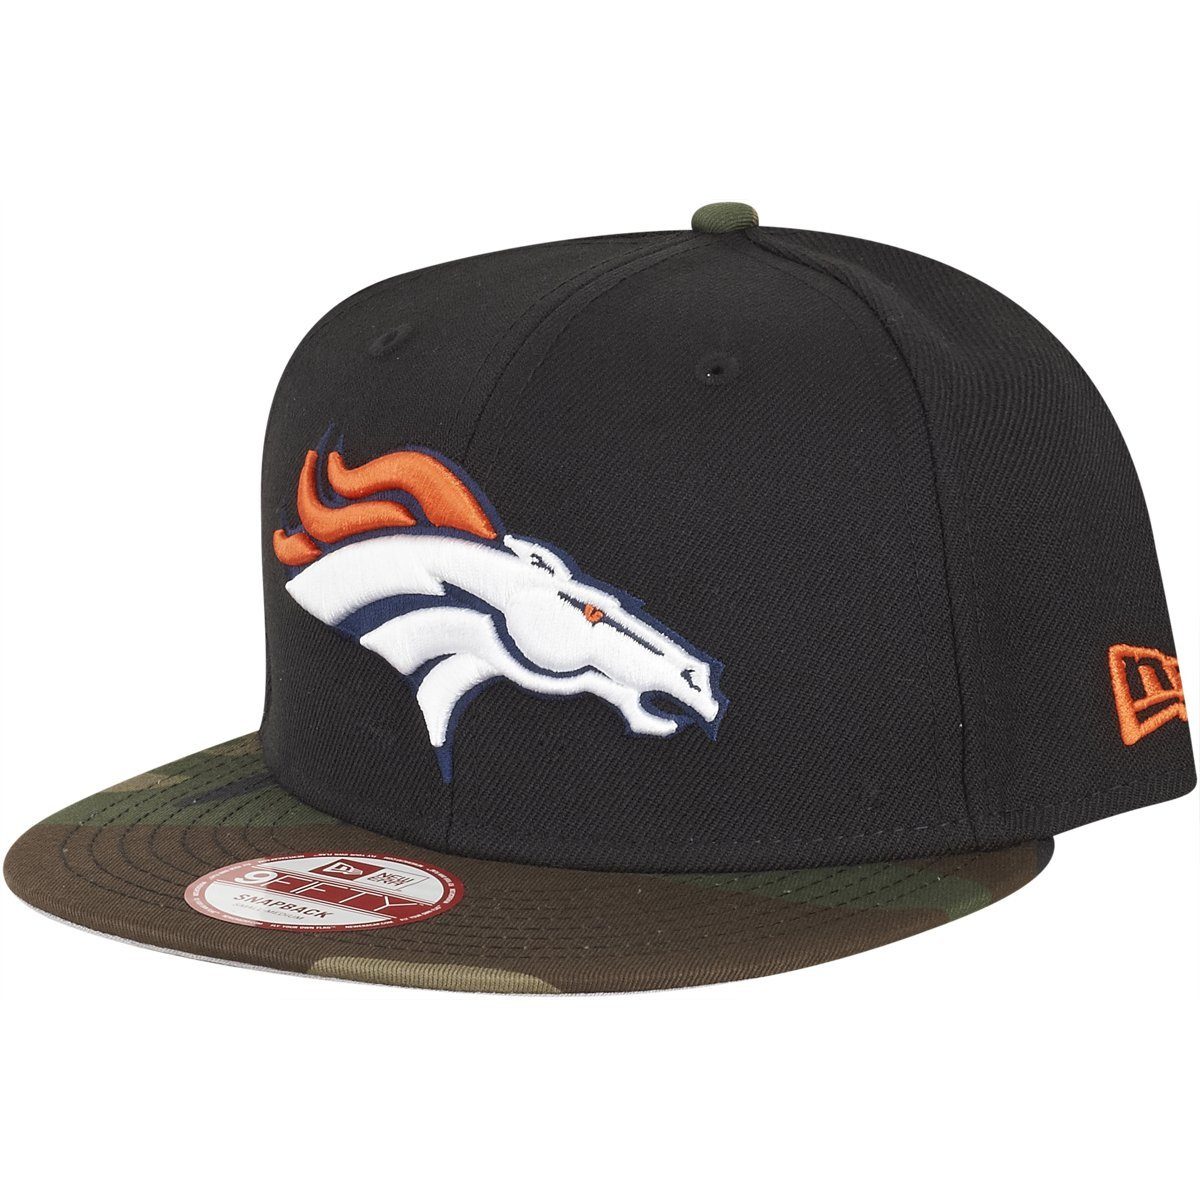 New Era Snapback Cap Broncos Denver 9Fifty